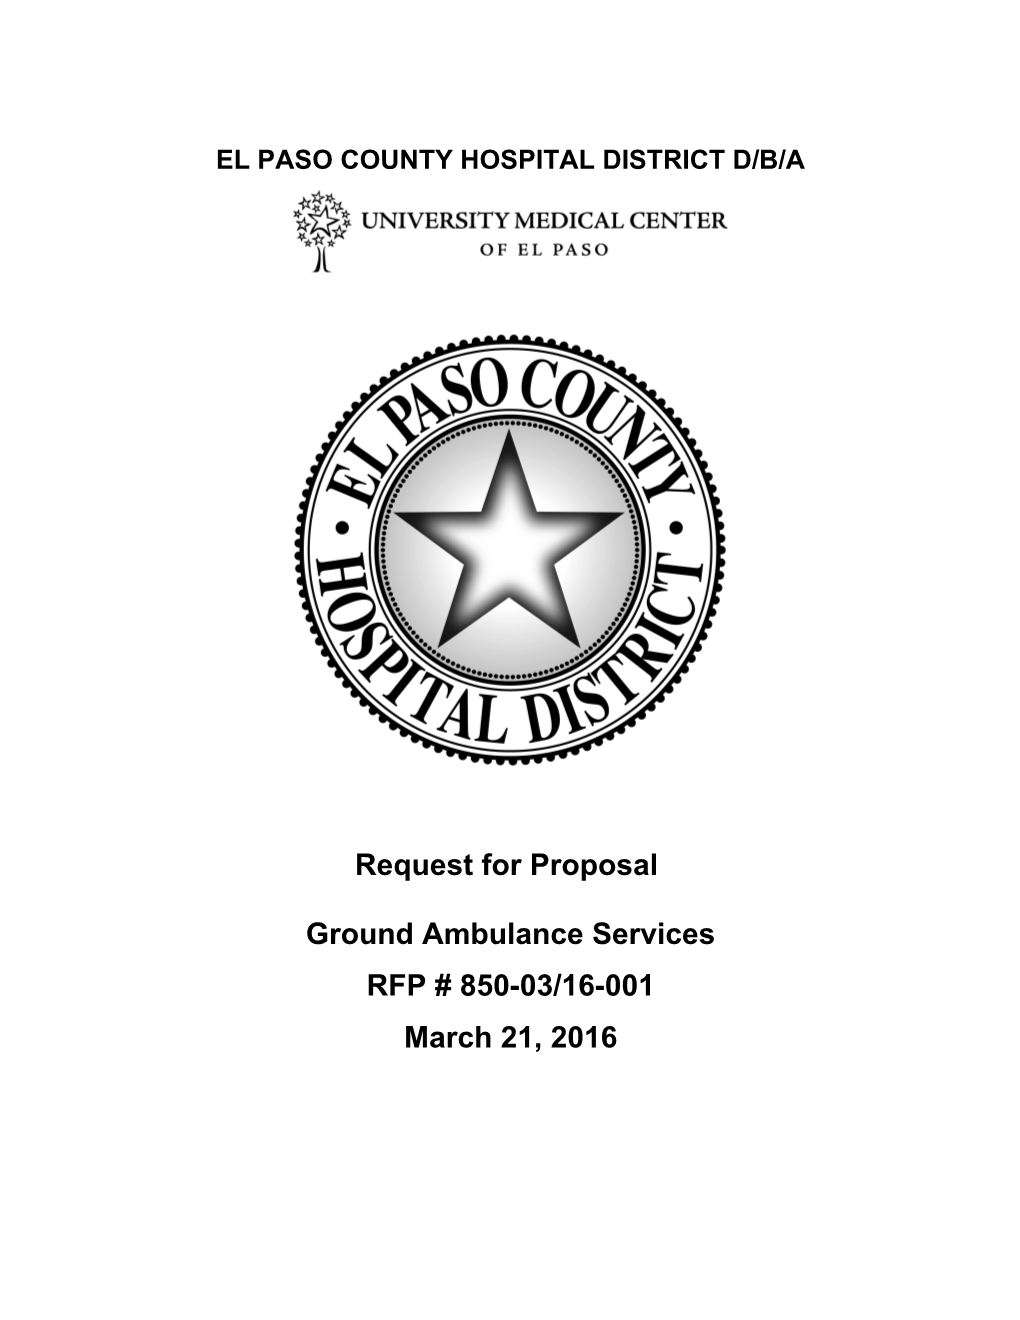 El Paso County Hospital District